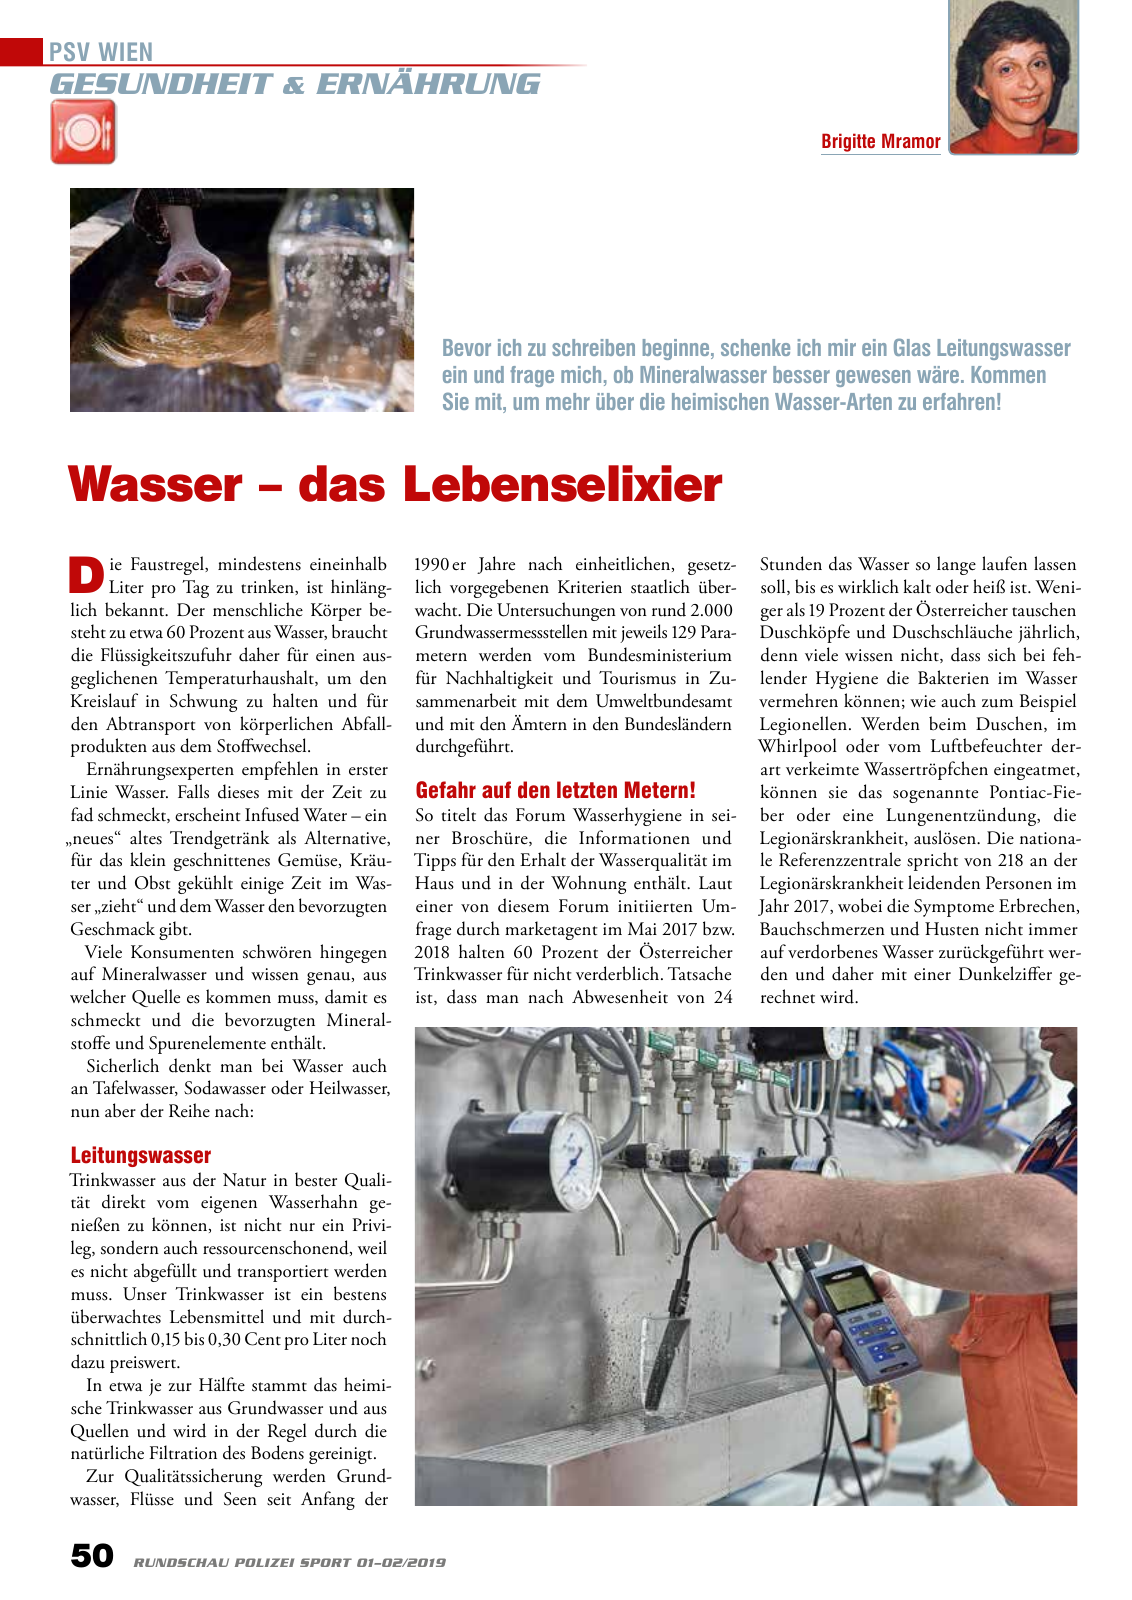 Vorschau Rundschau Polizei Sport 01-02/2019 Seite 50